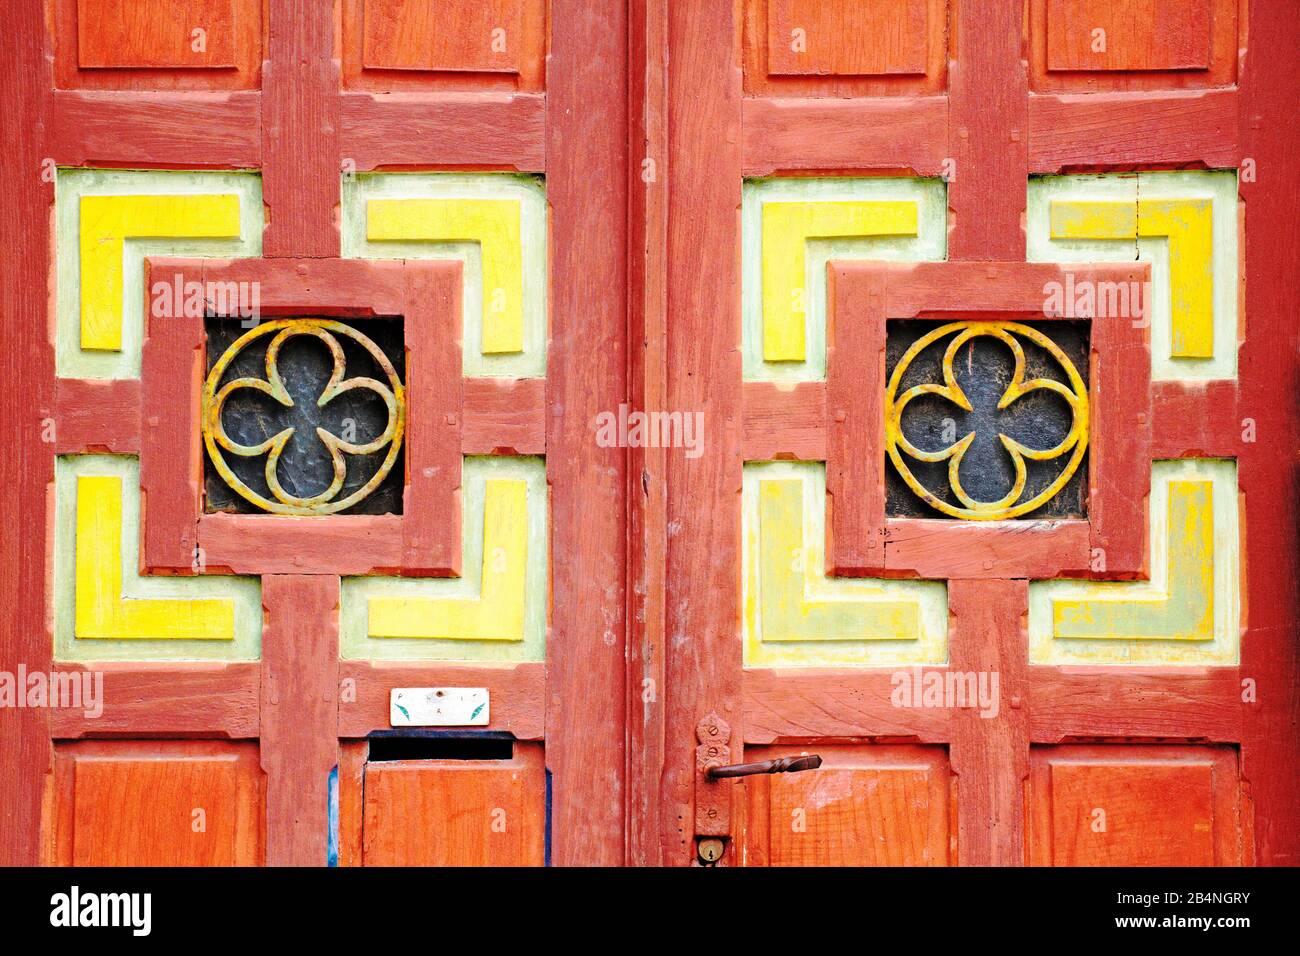 Auffällige rote Holztür mit Kassettenplatten und stilisierter Blume. Tréguier ist eine Gemeinde im Département Côtes-d'Armor in der Bretagne. Tréguier ist die historische Hauptstadt des Trégor. Stockfoto